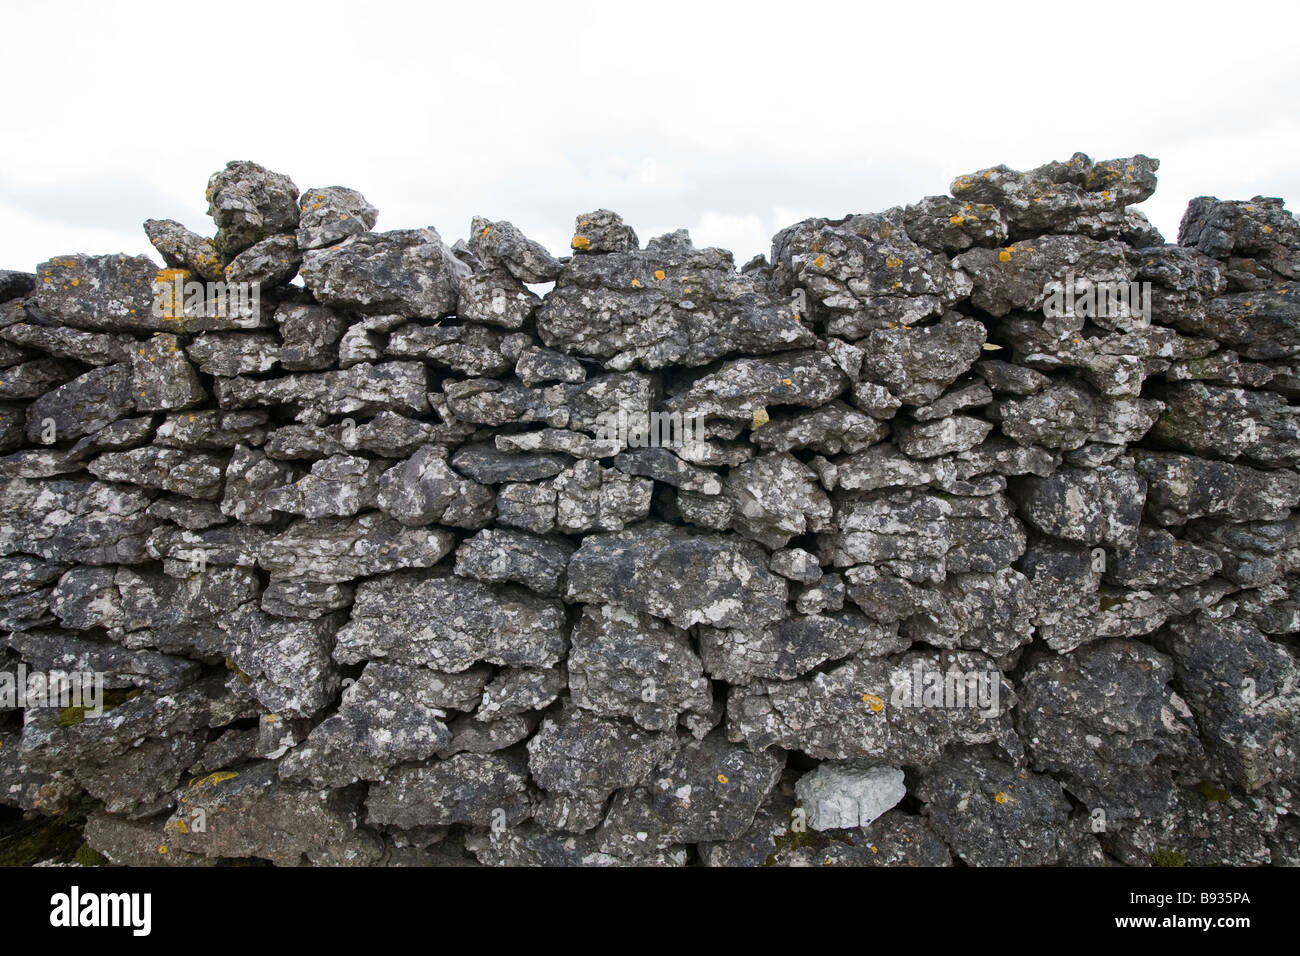 Mur en pierre sèche à base de lapiez, montrant interlocking grande pierre, Cumbria, Angleterre Banque D'Images